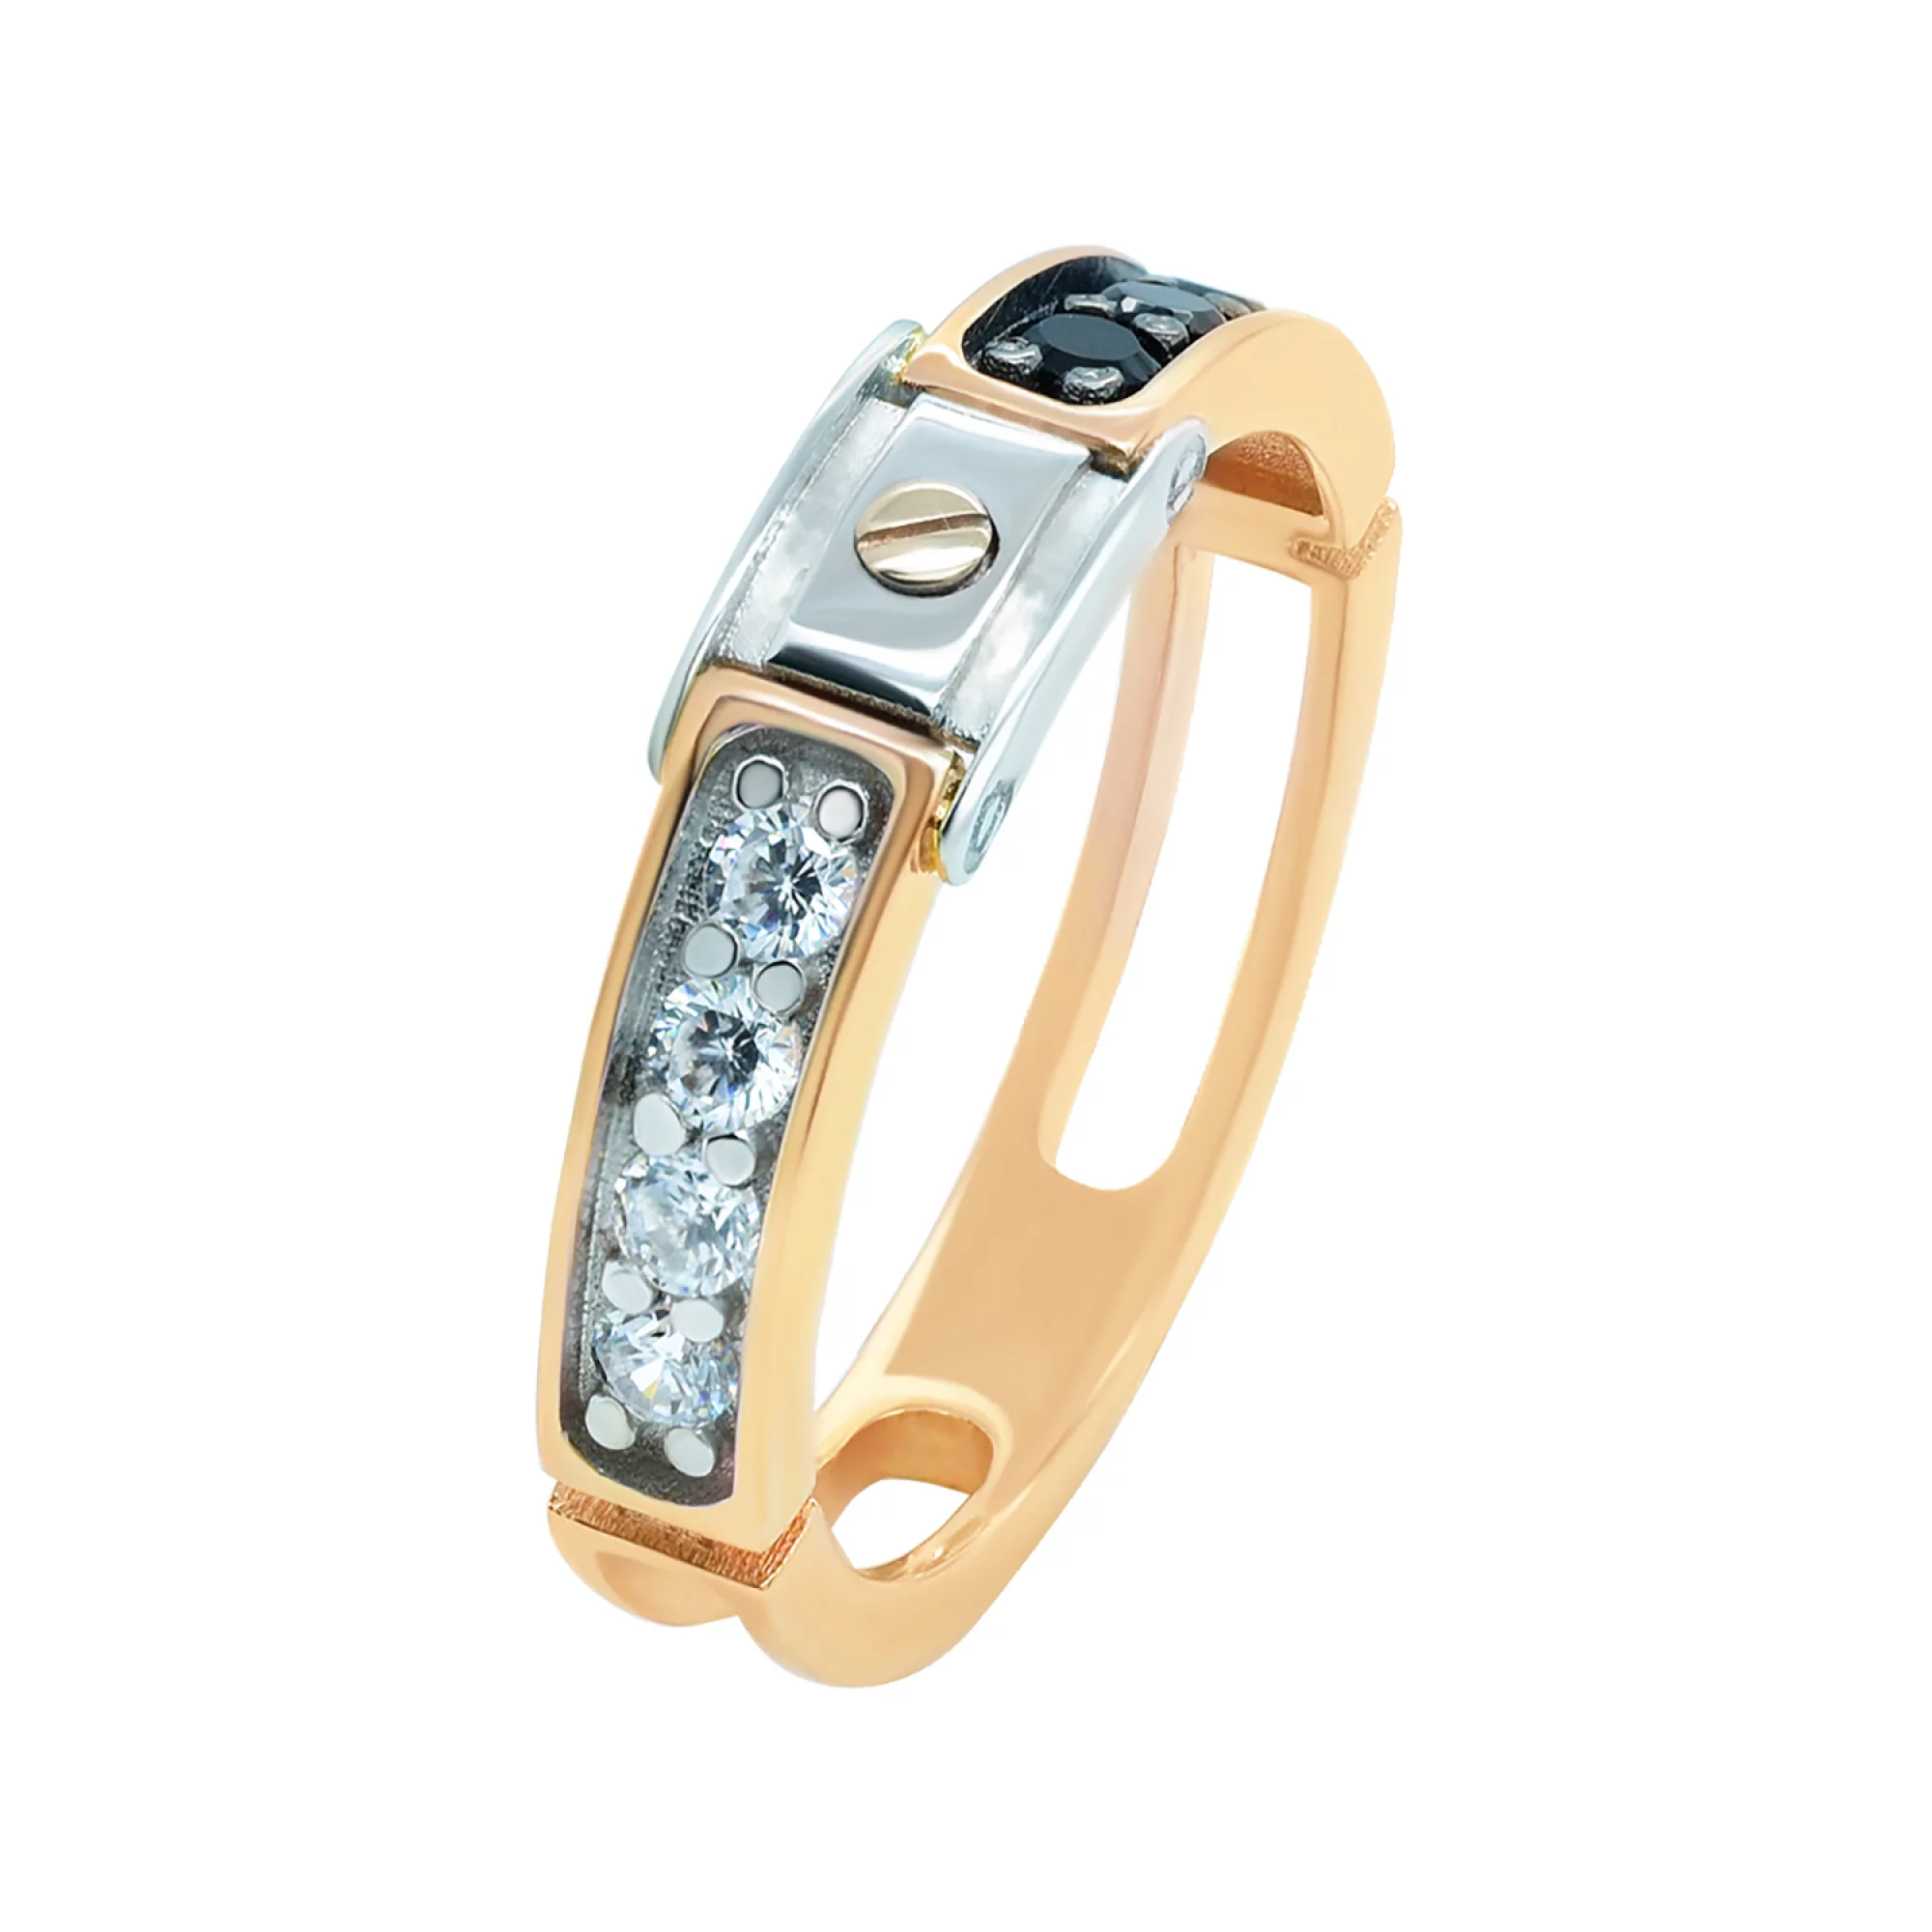 Перстень из комбинированного золота с цирконием - 962473 – изображение 1